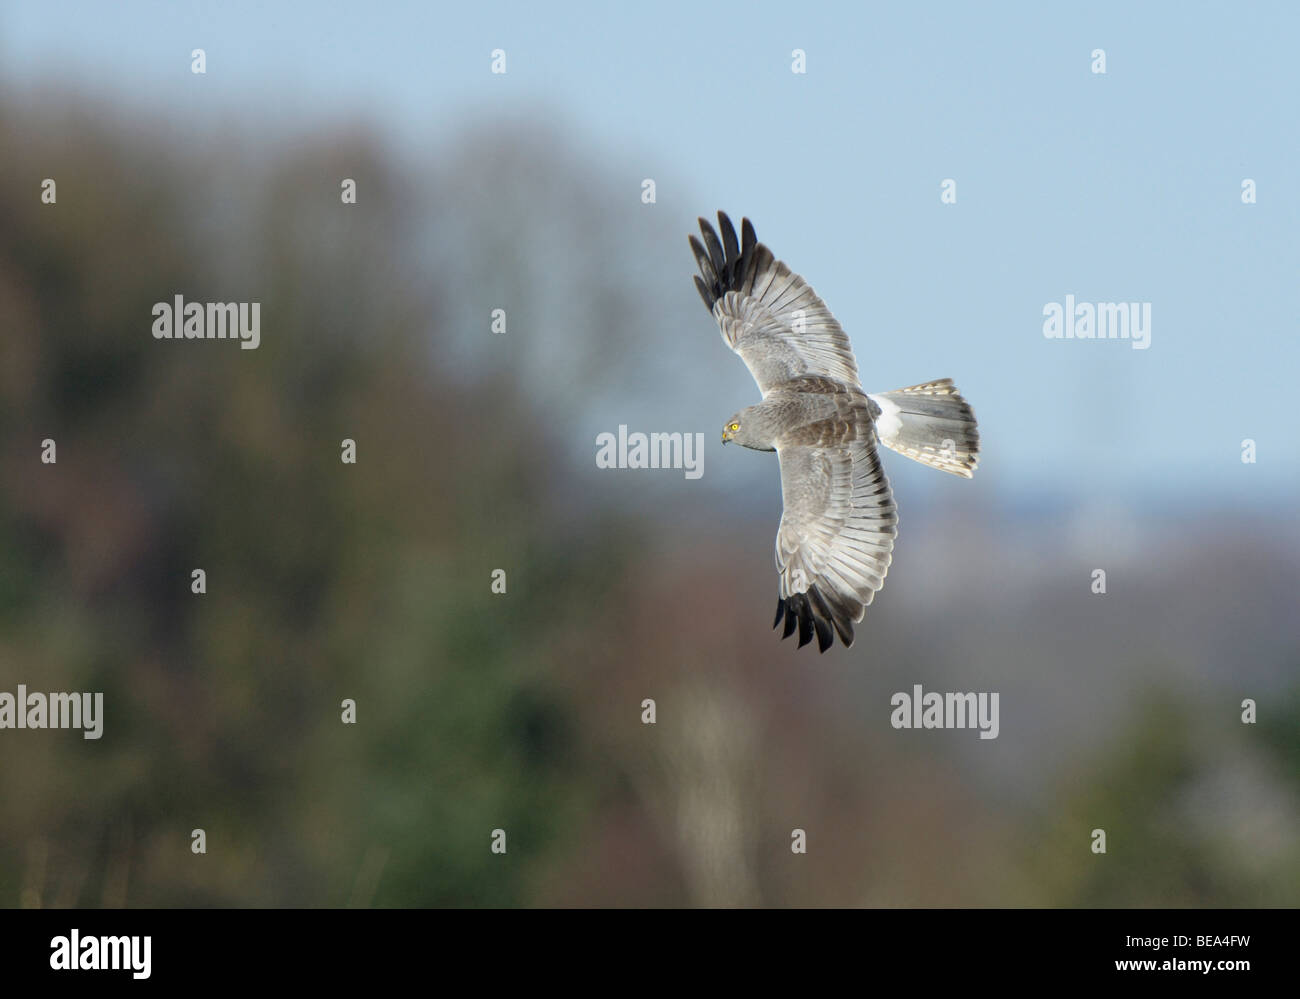 vliegbeeld man Blauwe Kiekendief, bovenaanzicht; male Hen Harrier in flight, upwing view Stock Photo